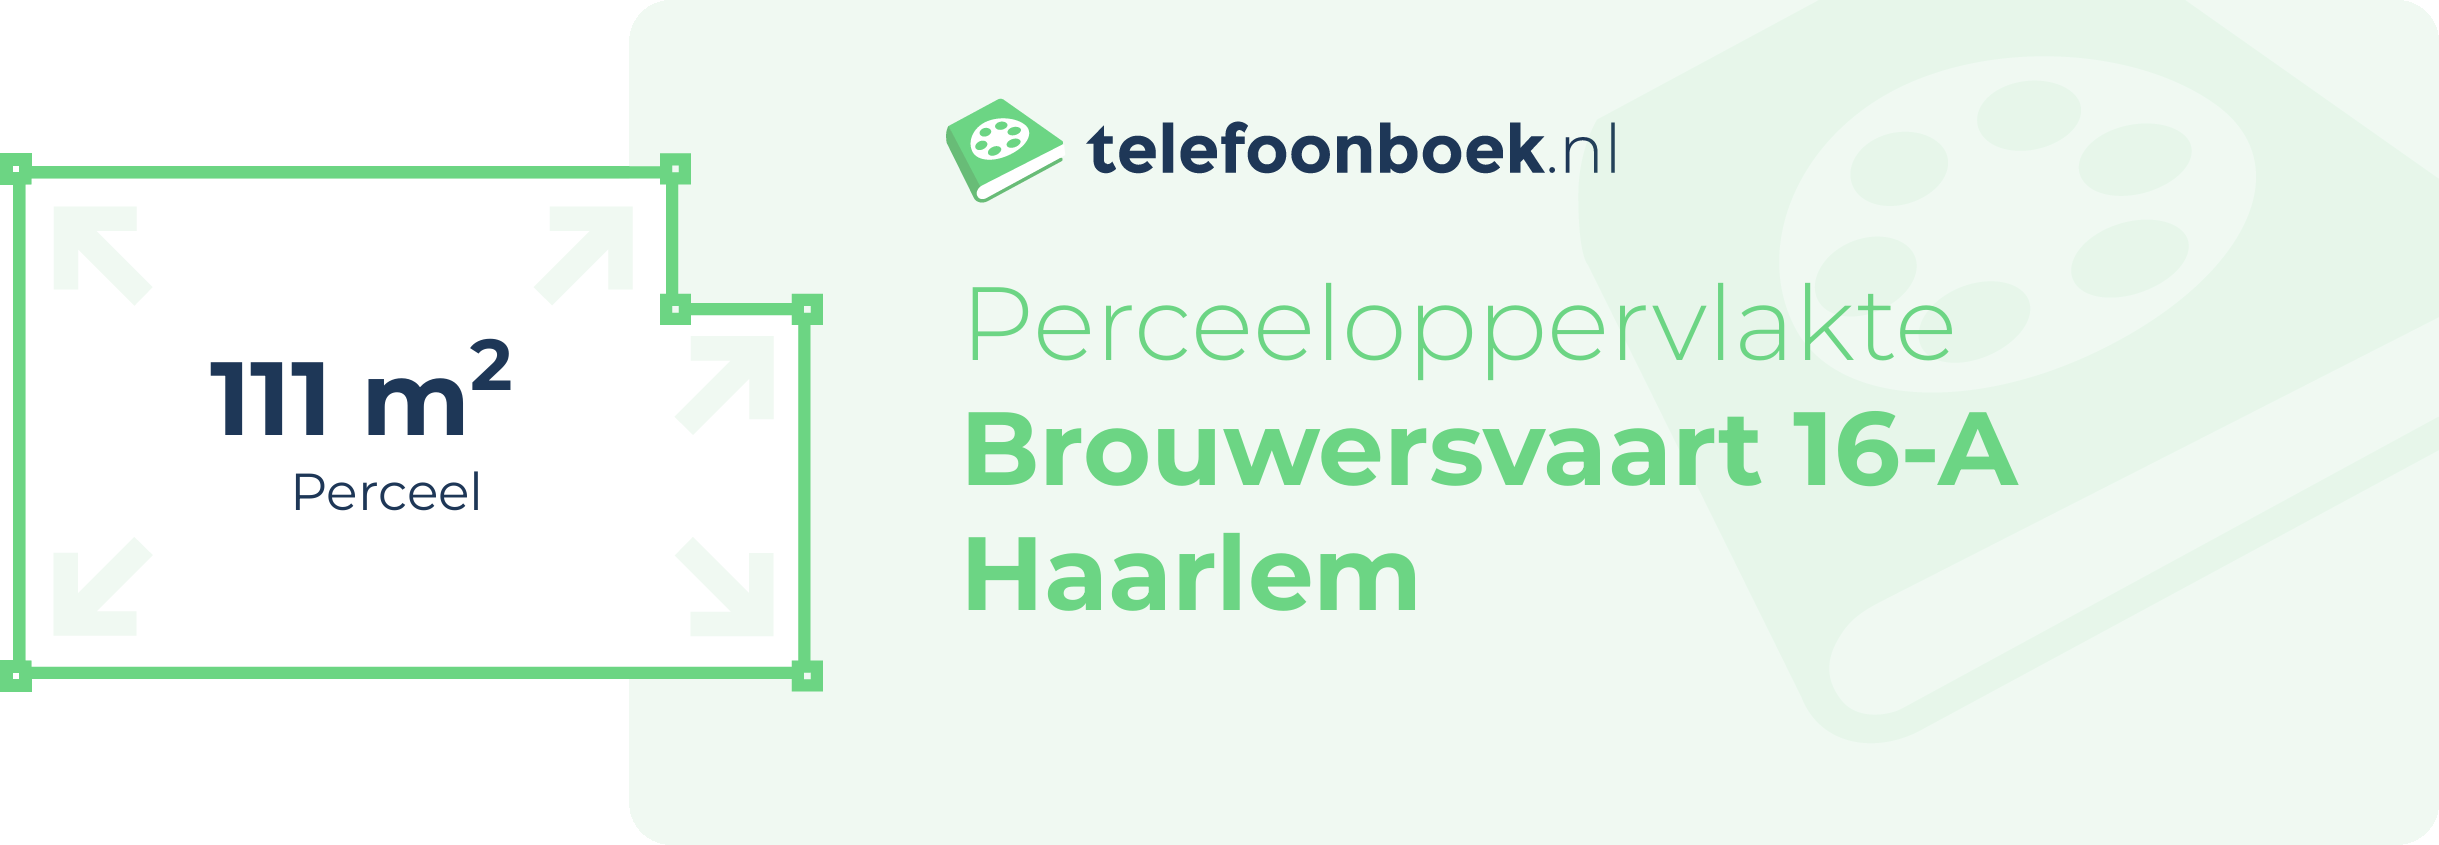 Perceeloppervlakte Brouwersvaart 16-A Haarlem